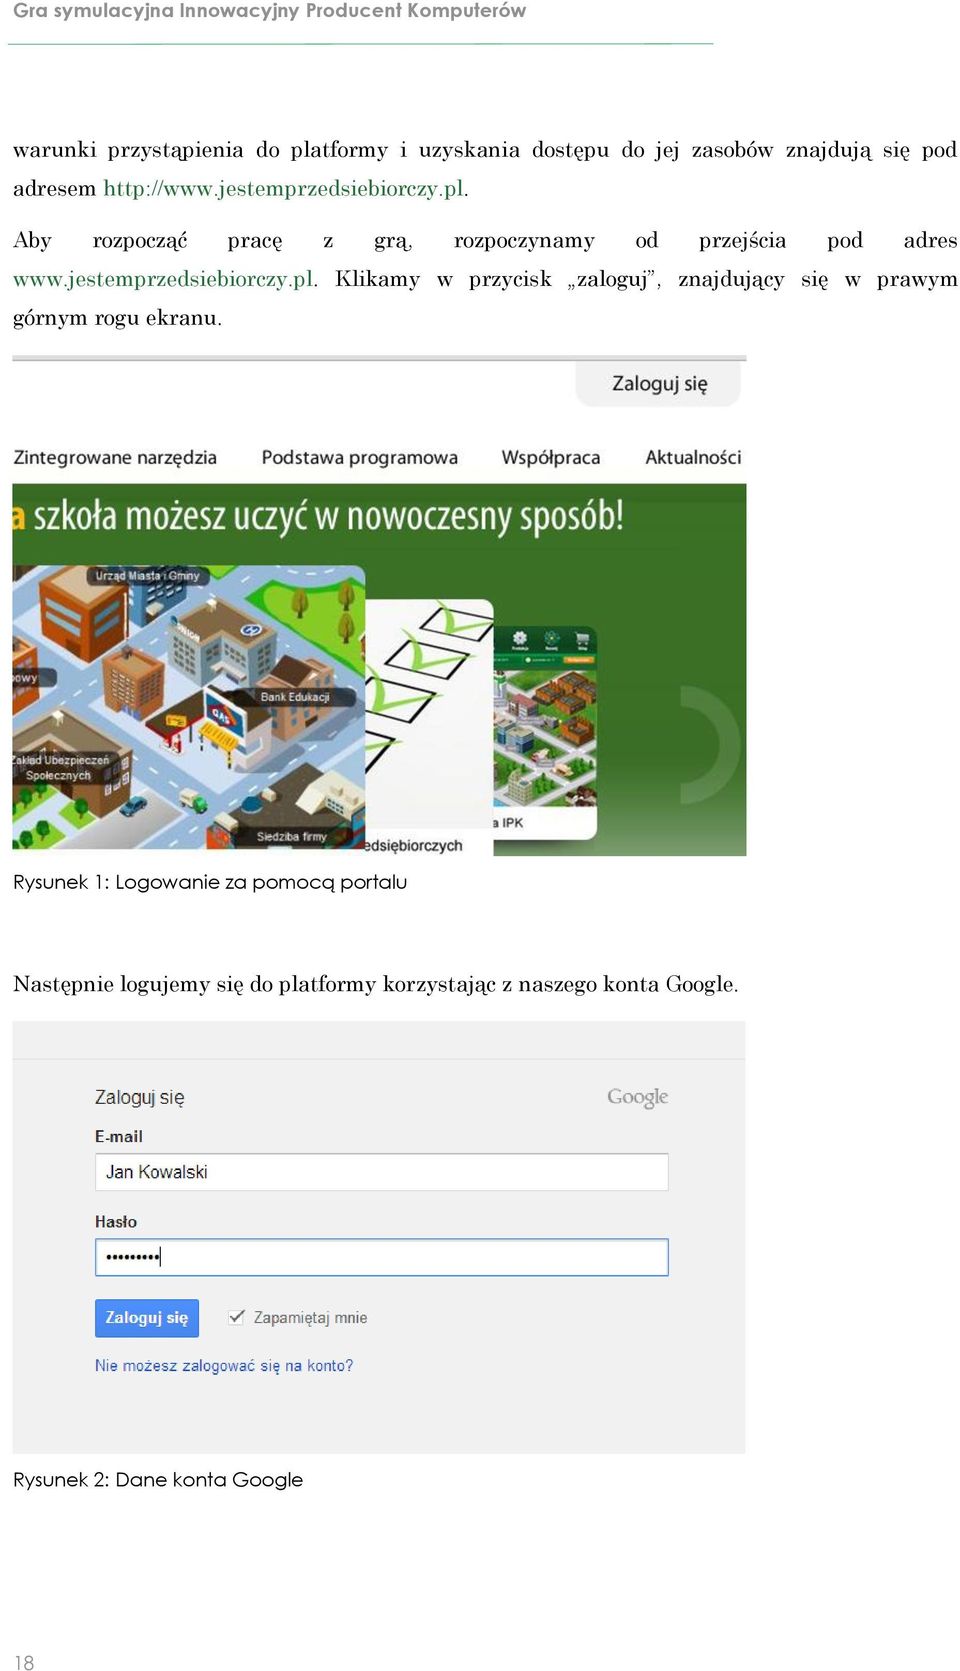 Aby rozpocząć pracę z grą, rozpoczynamy od przejścia pod adres www.jestemprzedsiebiorczy.pl.